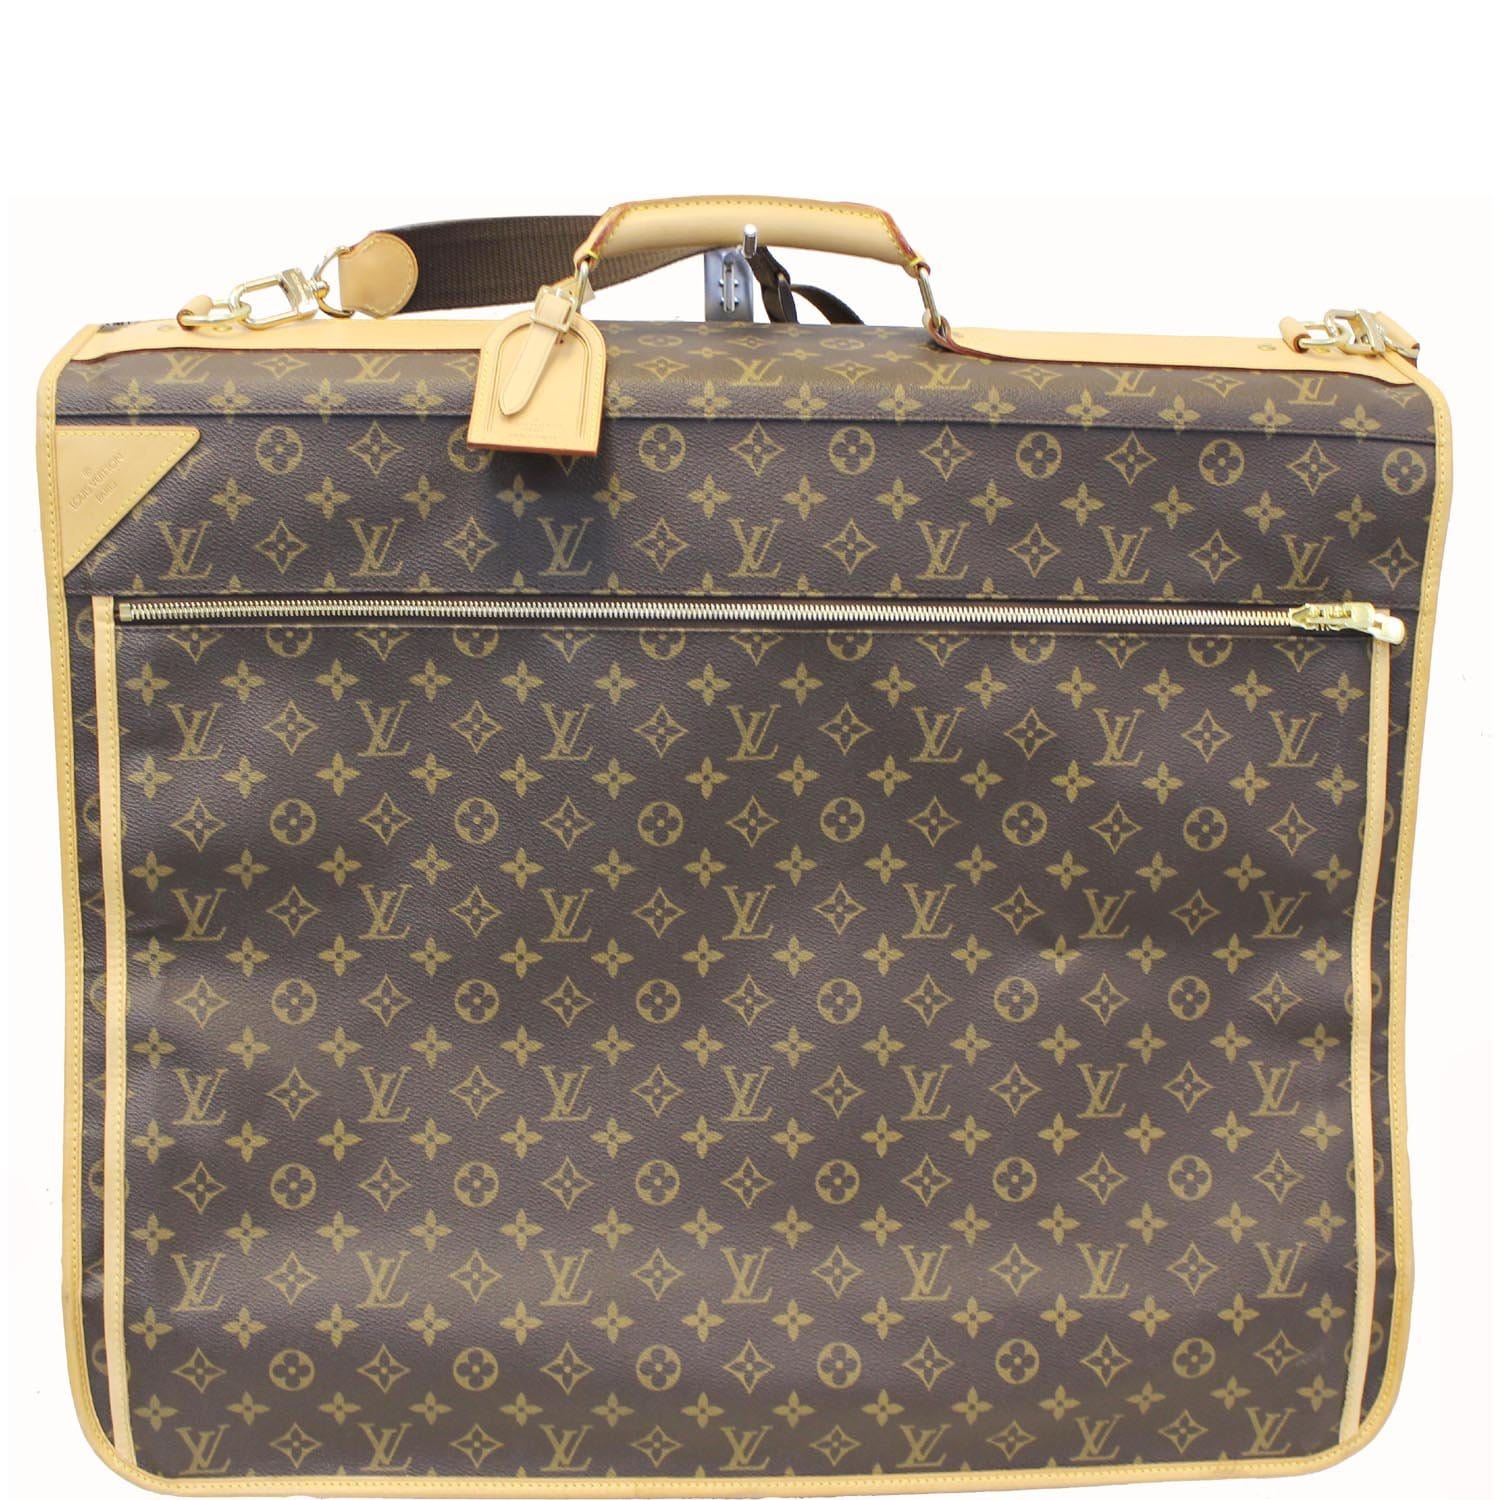 Louis Vuitton - Travel case / Suit holder